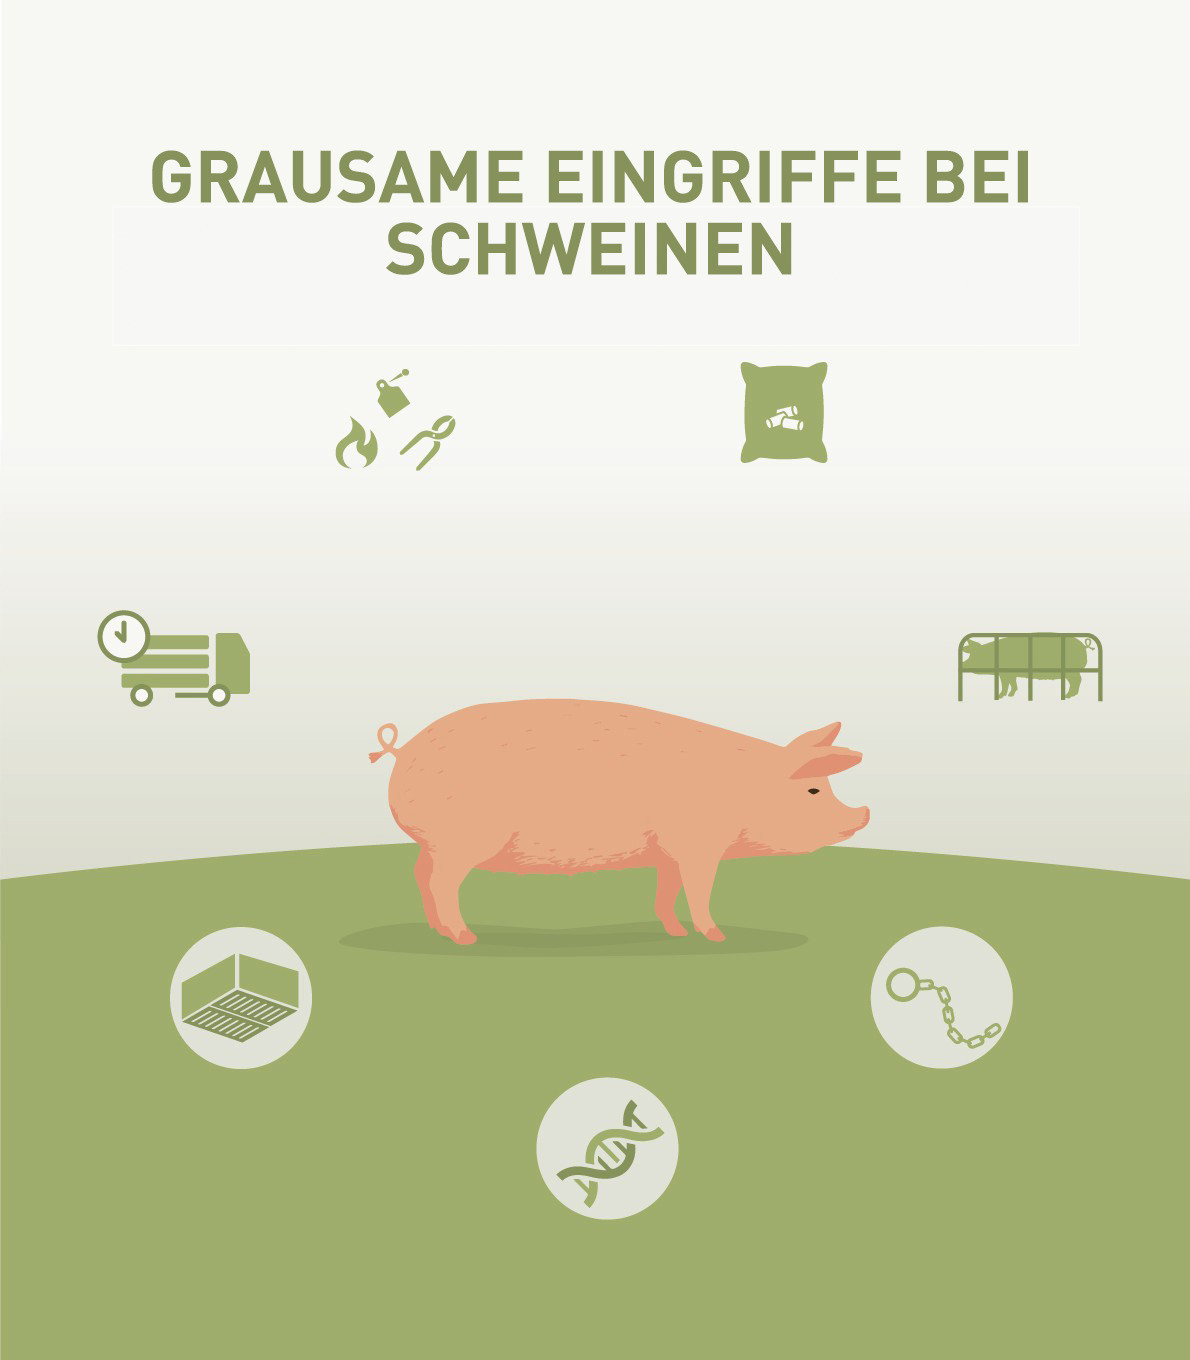 Grausame Praktiken in der intensiven Schweinehaltung